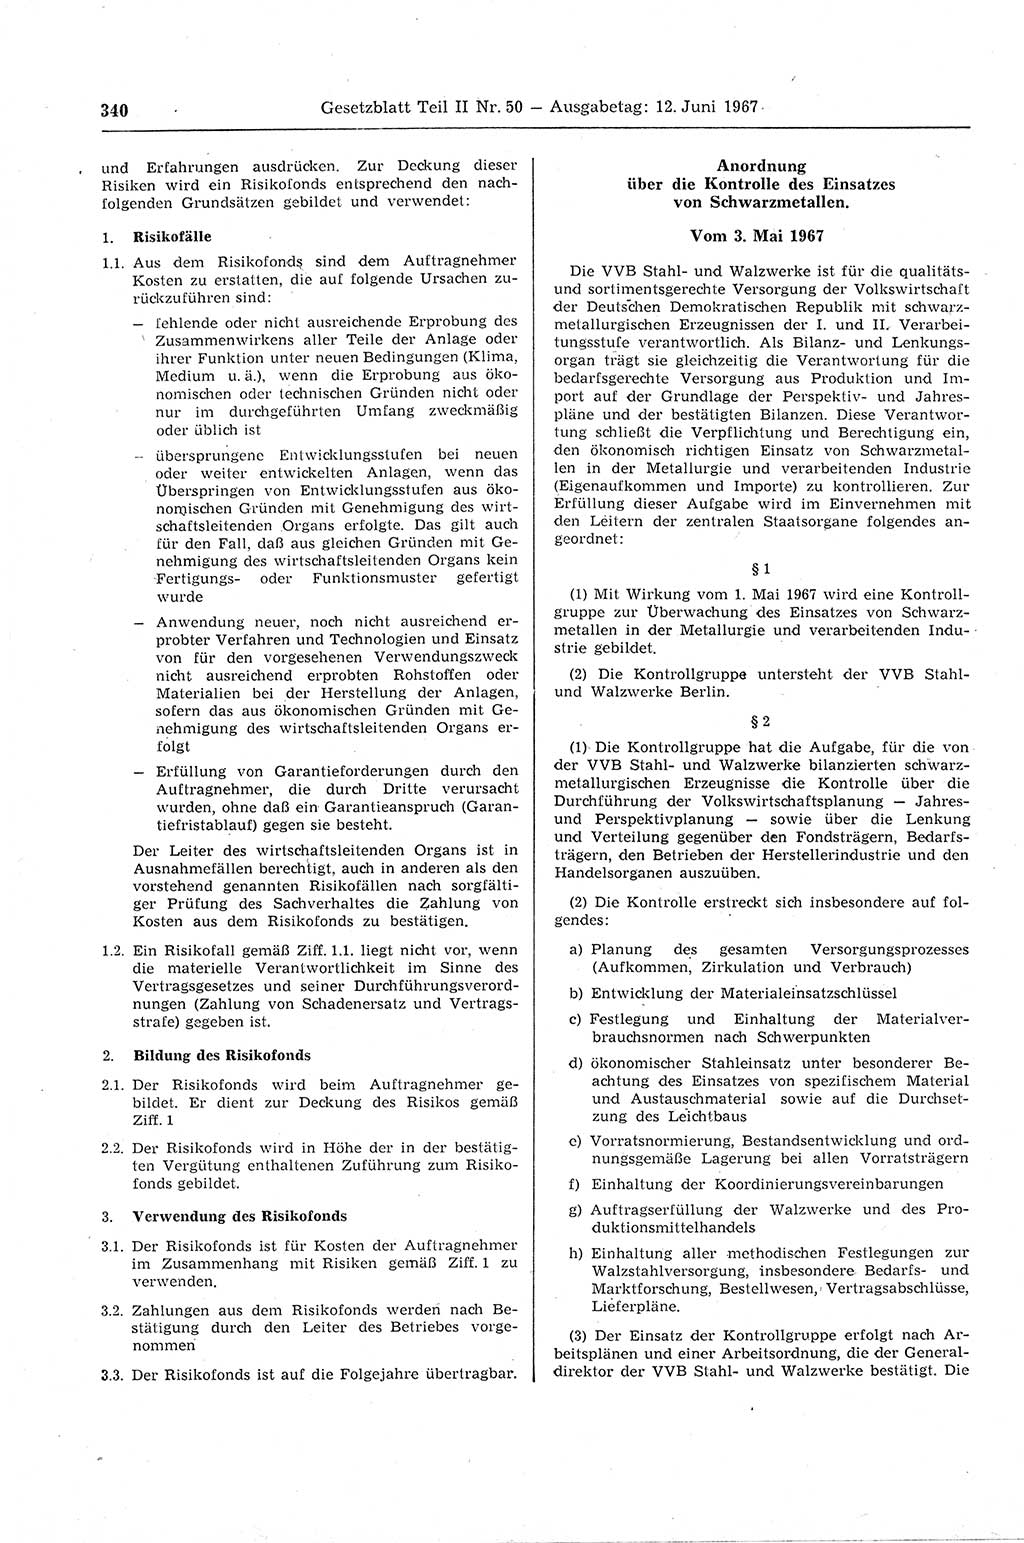 Gesetzblatt (GBl.) der Deutschen Demokratischen Republik (DDR) Teil ⅠⅠ 1967, Seite 340 (GBl. DDR ⅠⅠ 1967, S. 340)